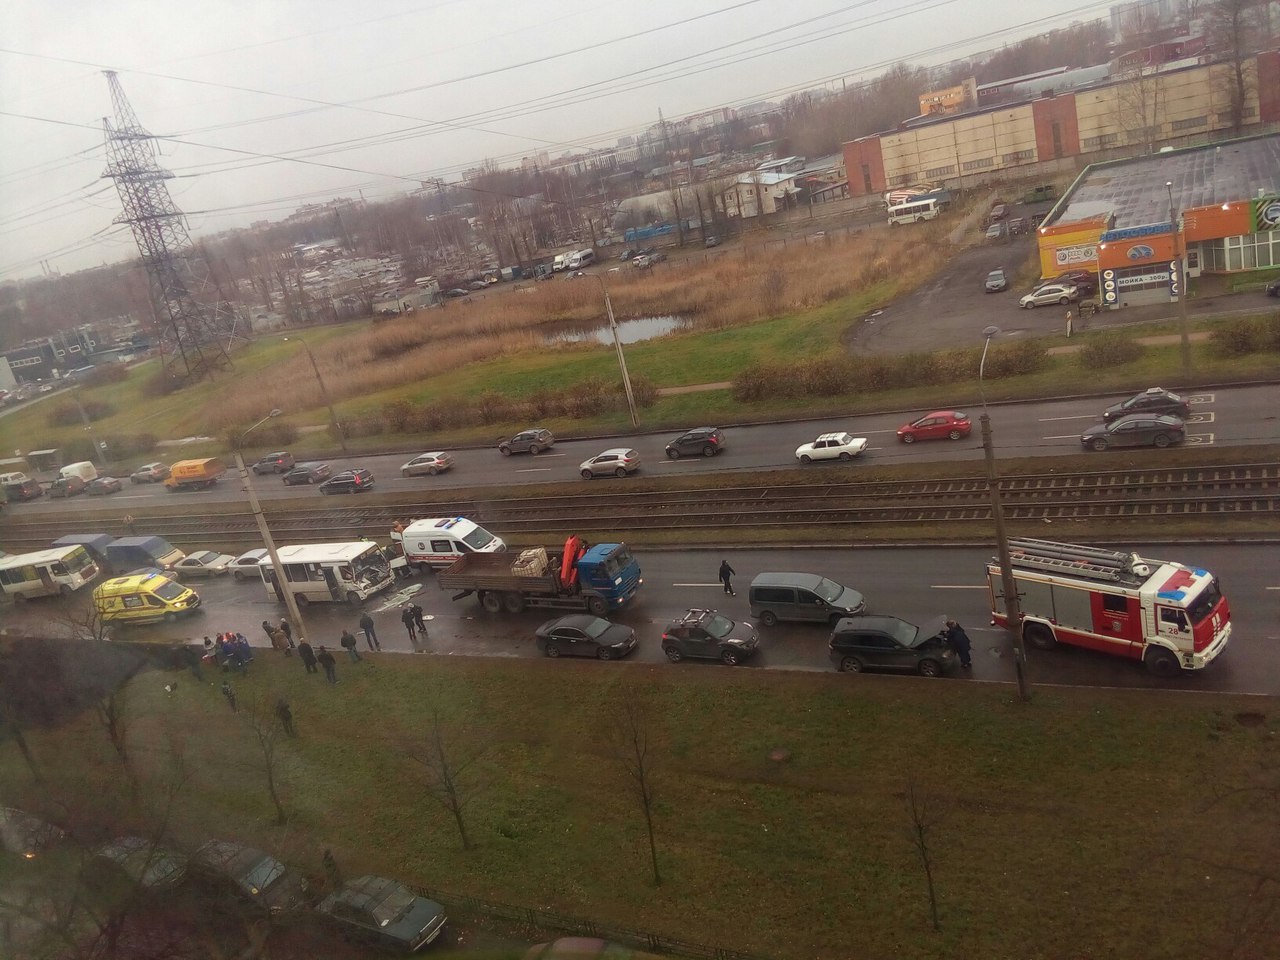 Видео: на Ириновском семь человек пострадали в ДТП с маршруткой и грузовиком